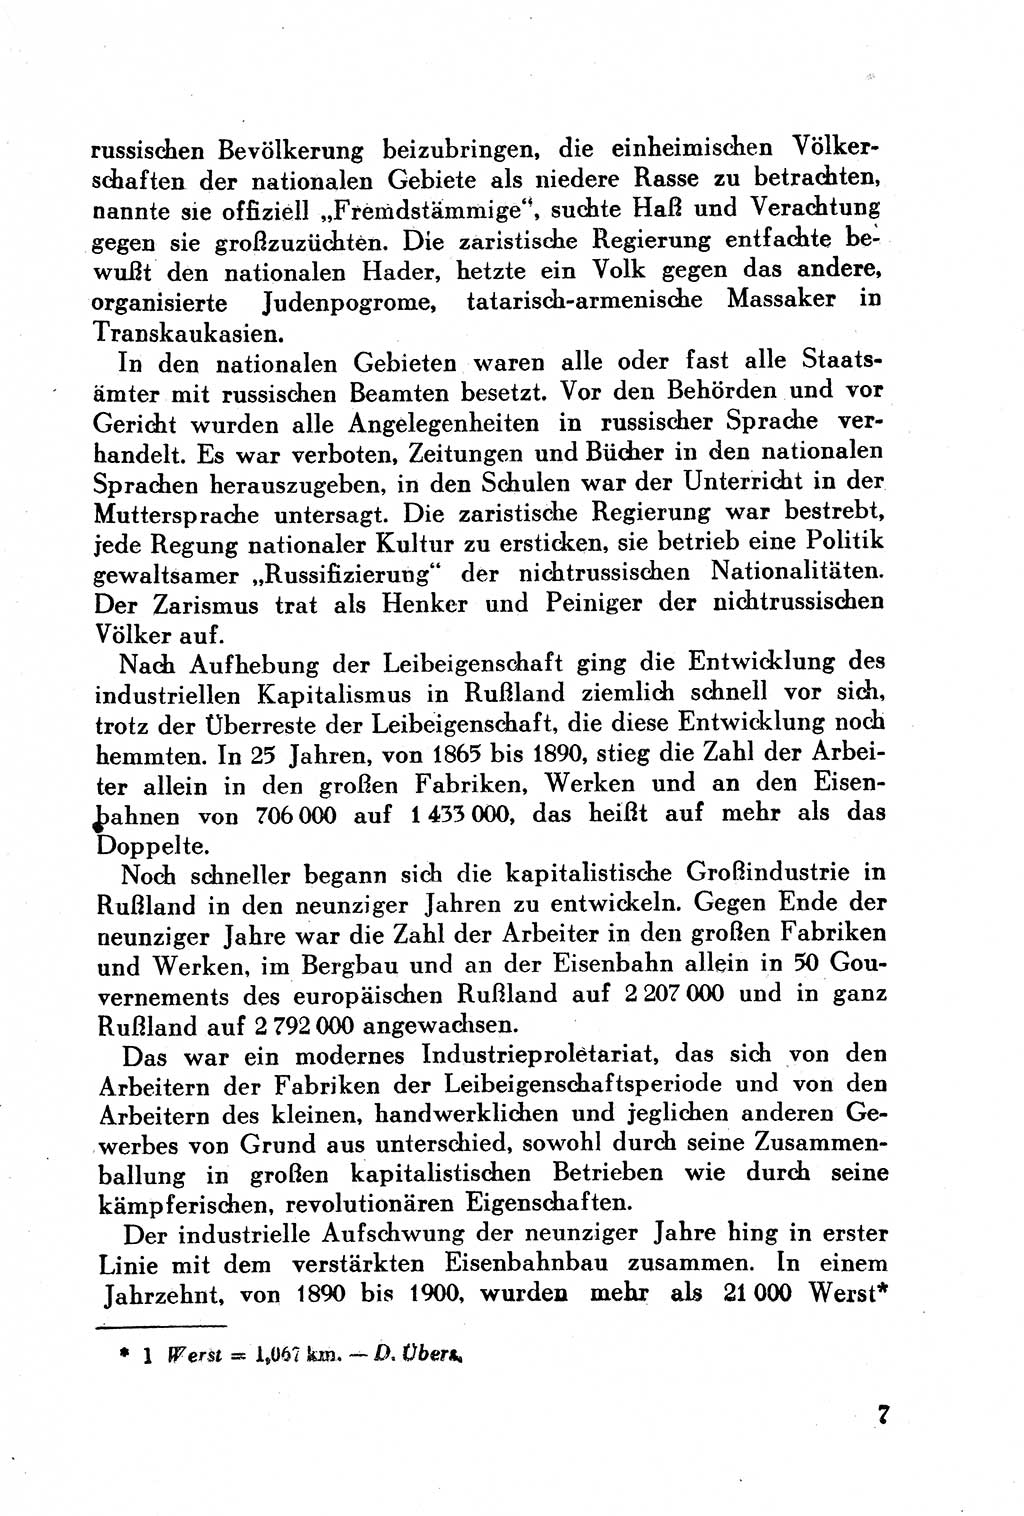 Geschichte der Kommunistischen Partei der Sowjetunion (KPdSU) [Sowjetische Besatzungszone (SBZ) Deutschlands] 1946, Seite 7 (Gesch. KPdSU SBZ Dtl. 1946, S. 7)